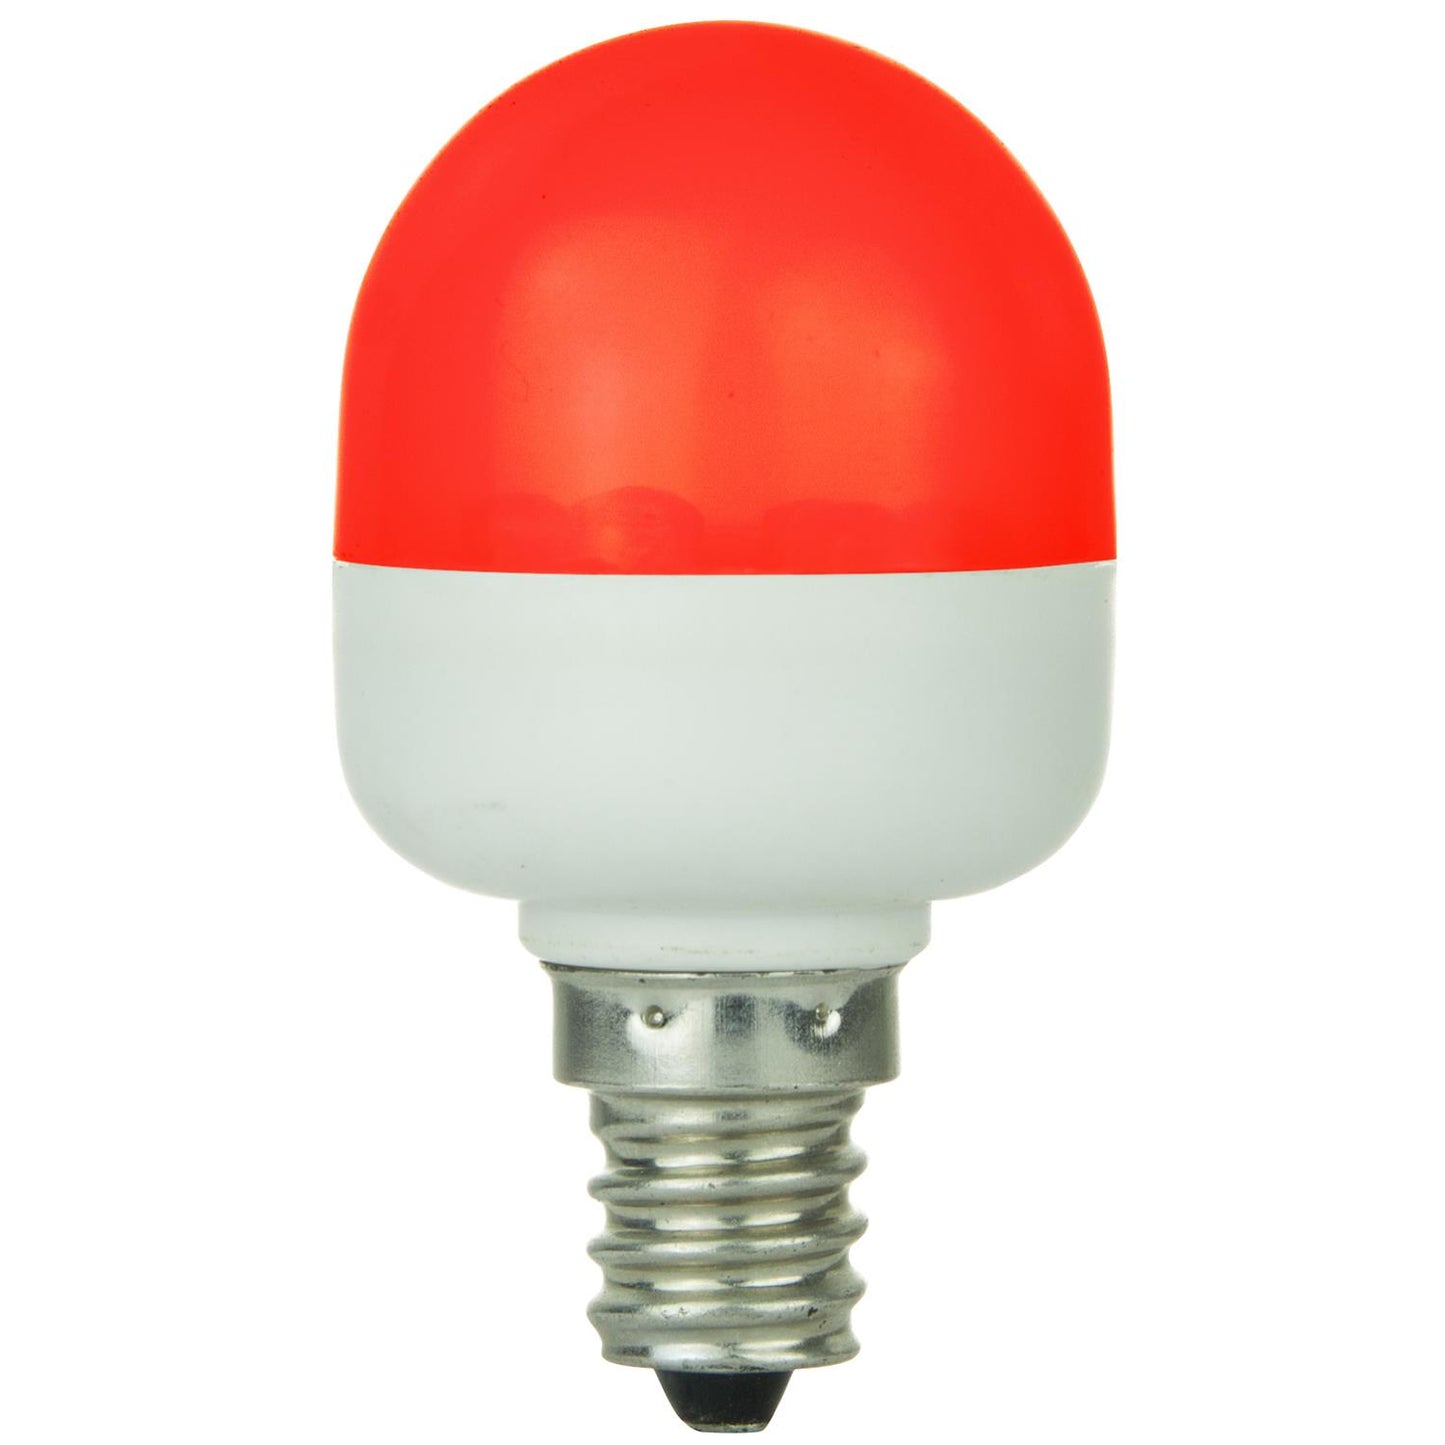 Sunlite T10 Tubular Indicator, Candelabra Base Light Bulb, Red